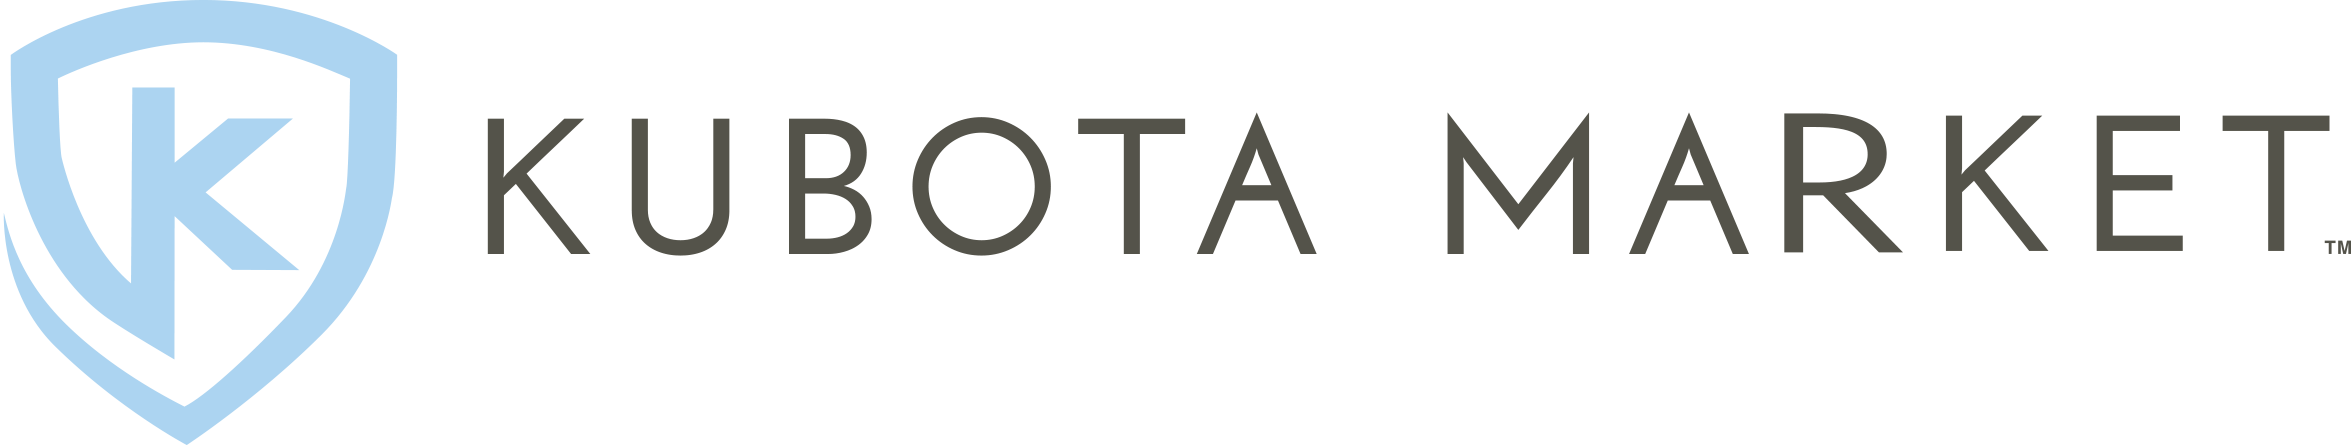 Kubota Market logo